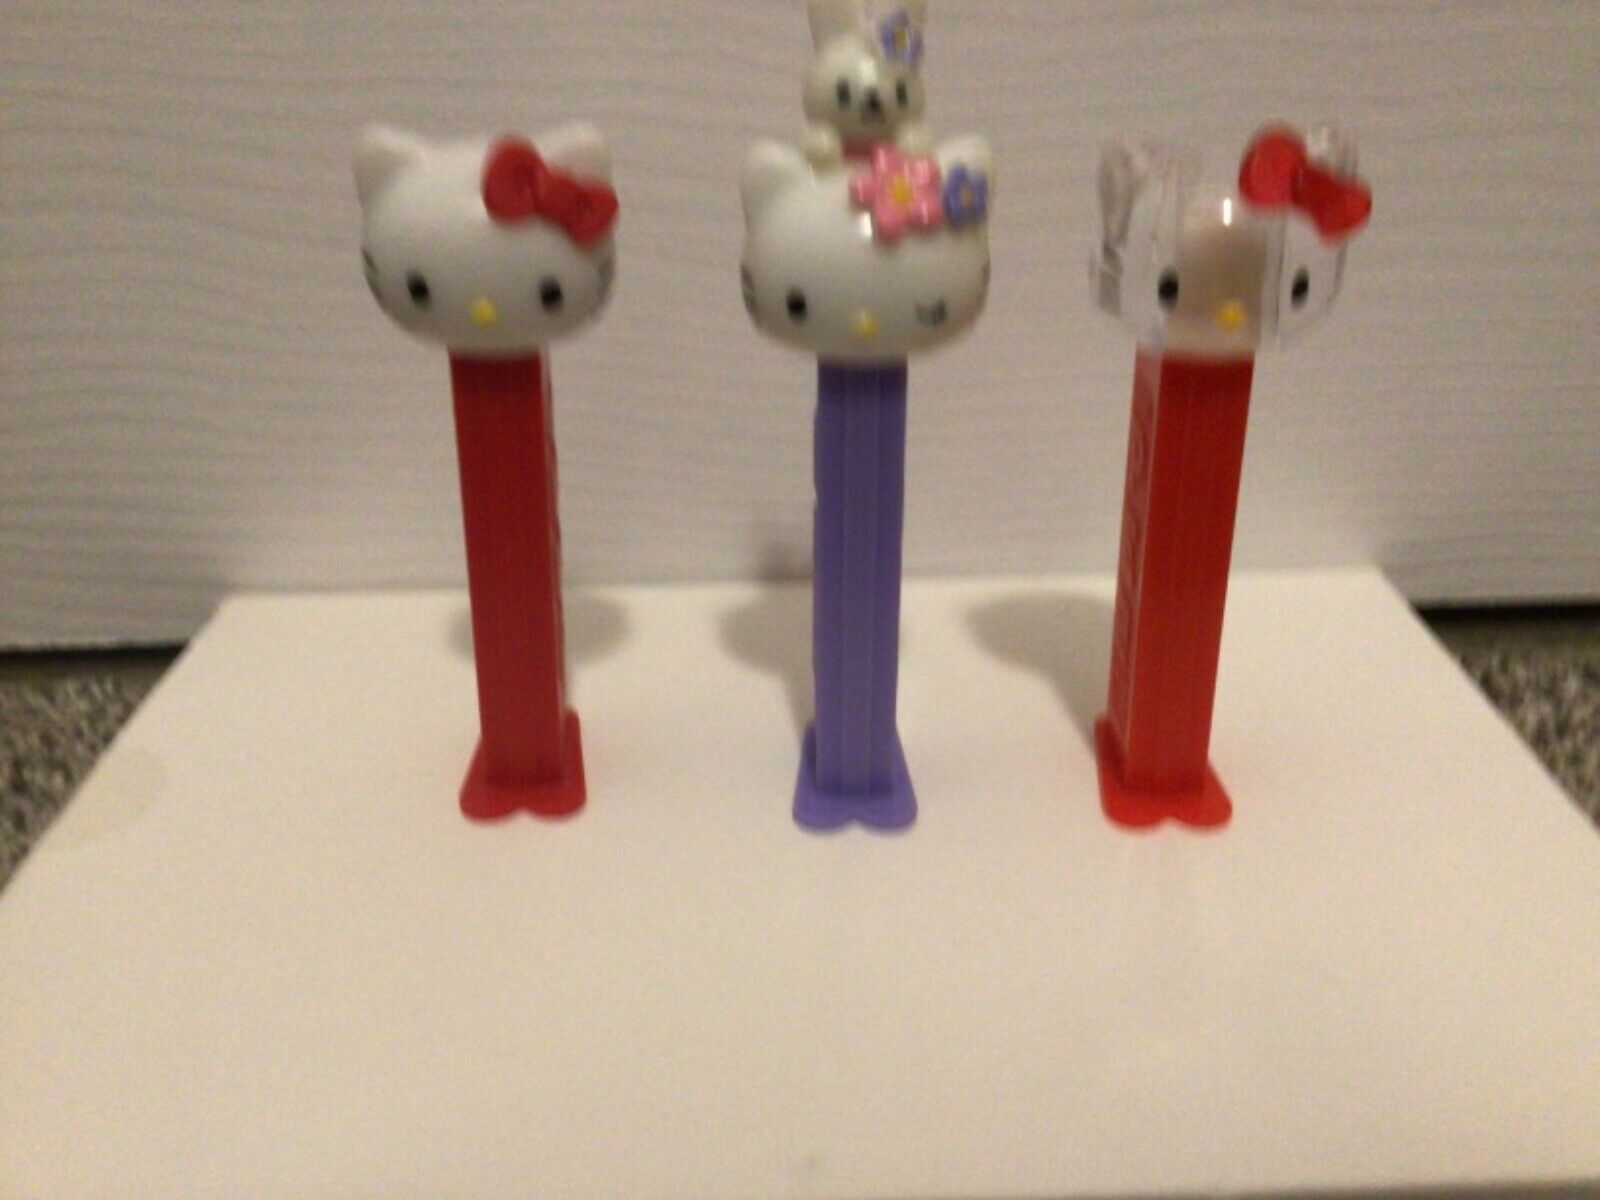 Pez Hello Kitty Dispensers